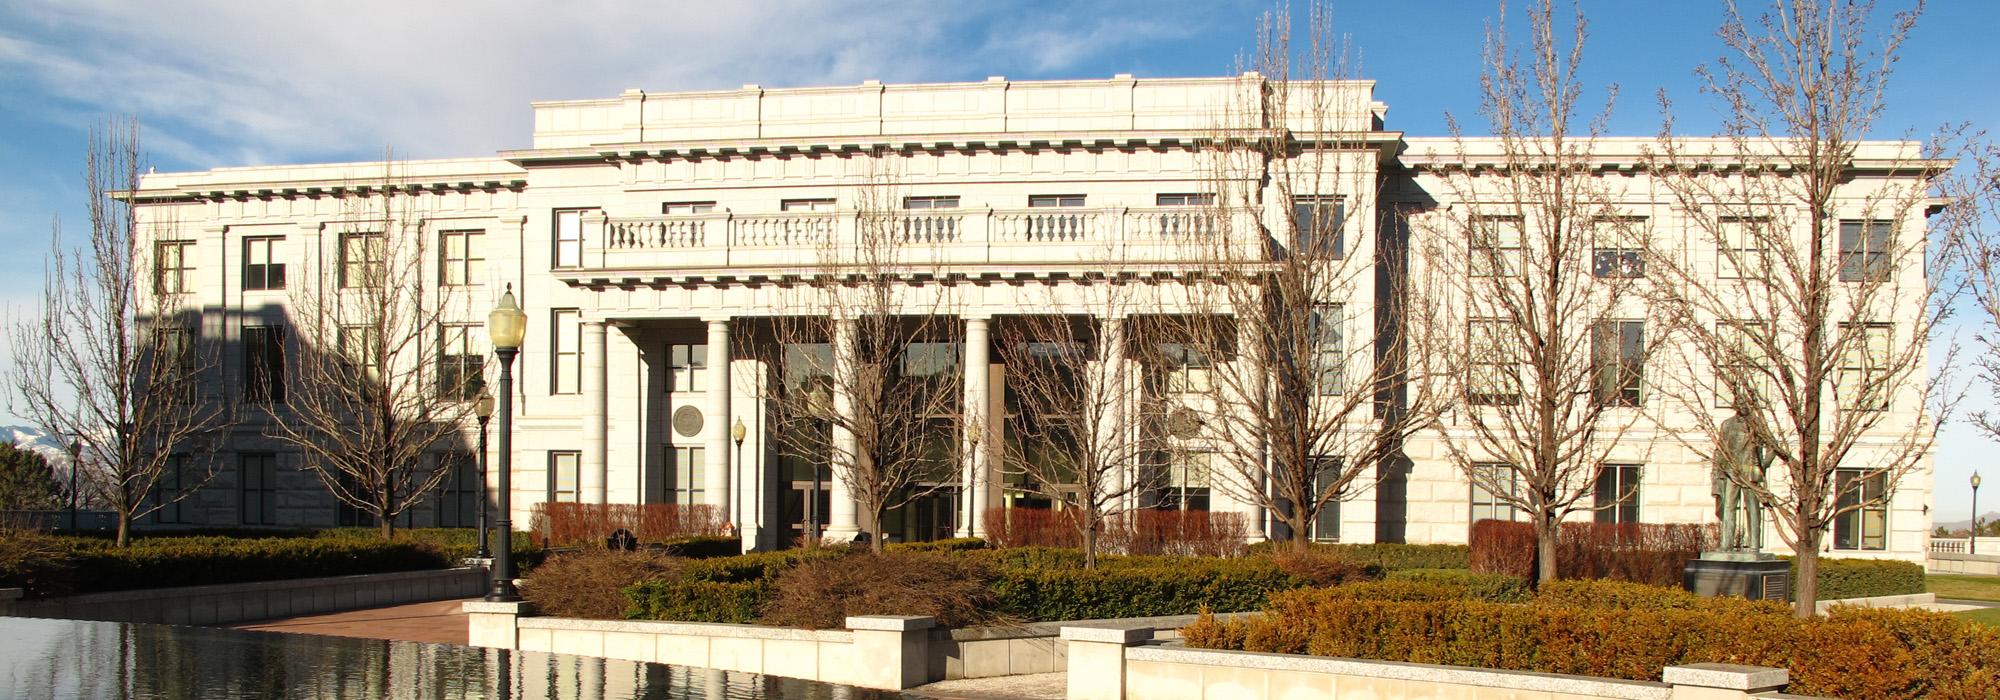 Utah State Capitol, Salt Lake City, UT